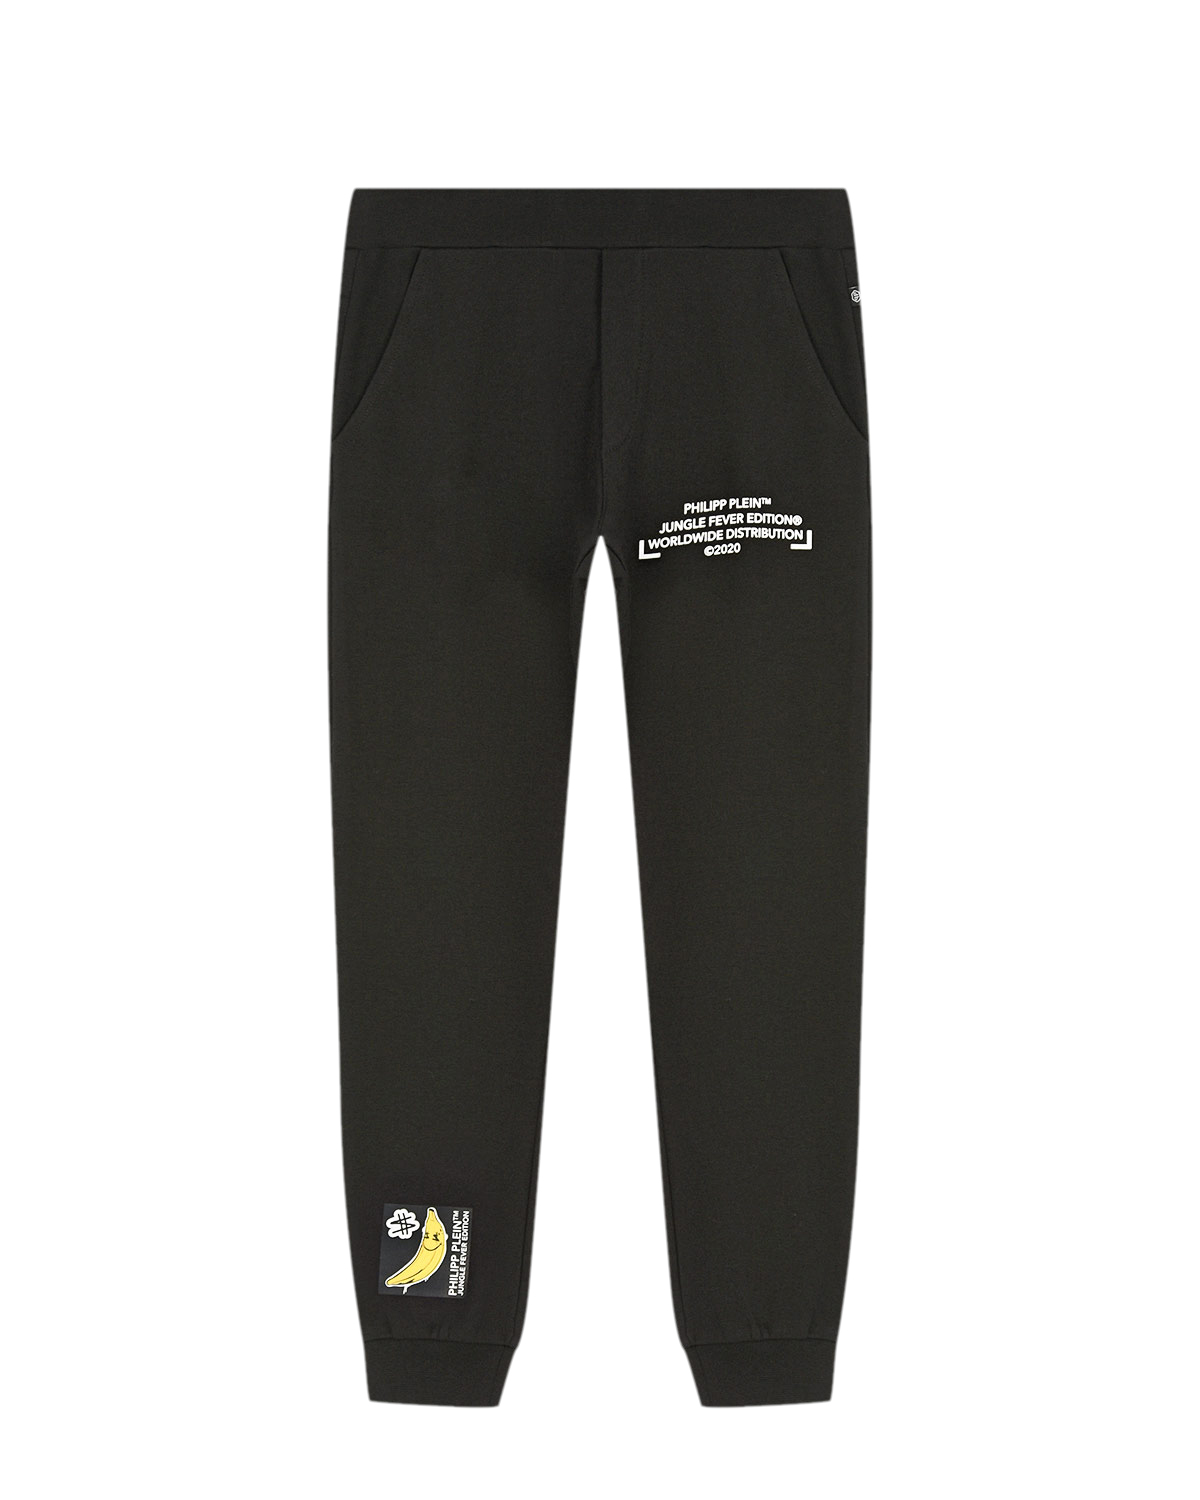 Черные спортивные брюки с принтом "банан" Philipp Plein детские, размер 140, цвет черный - фото 1